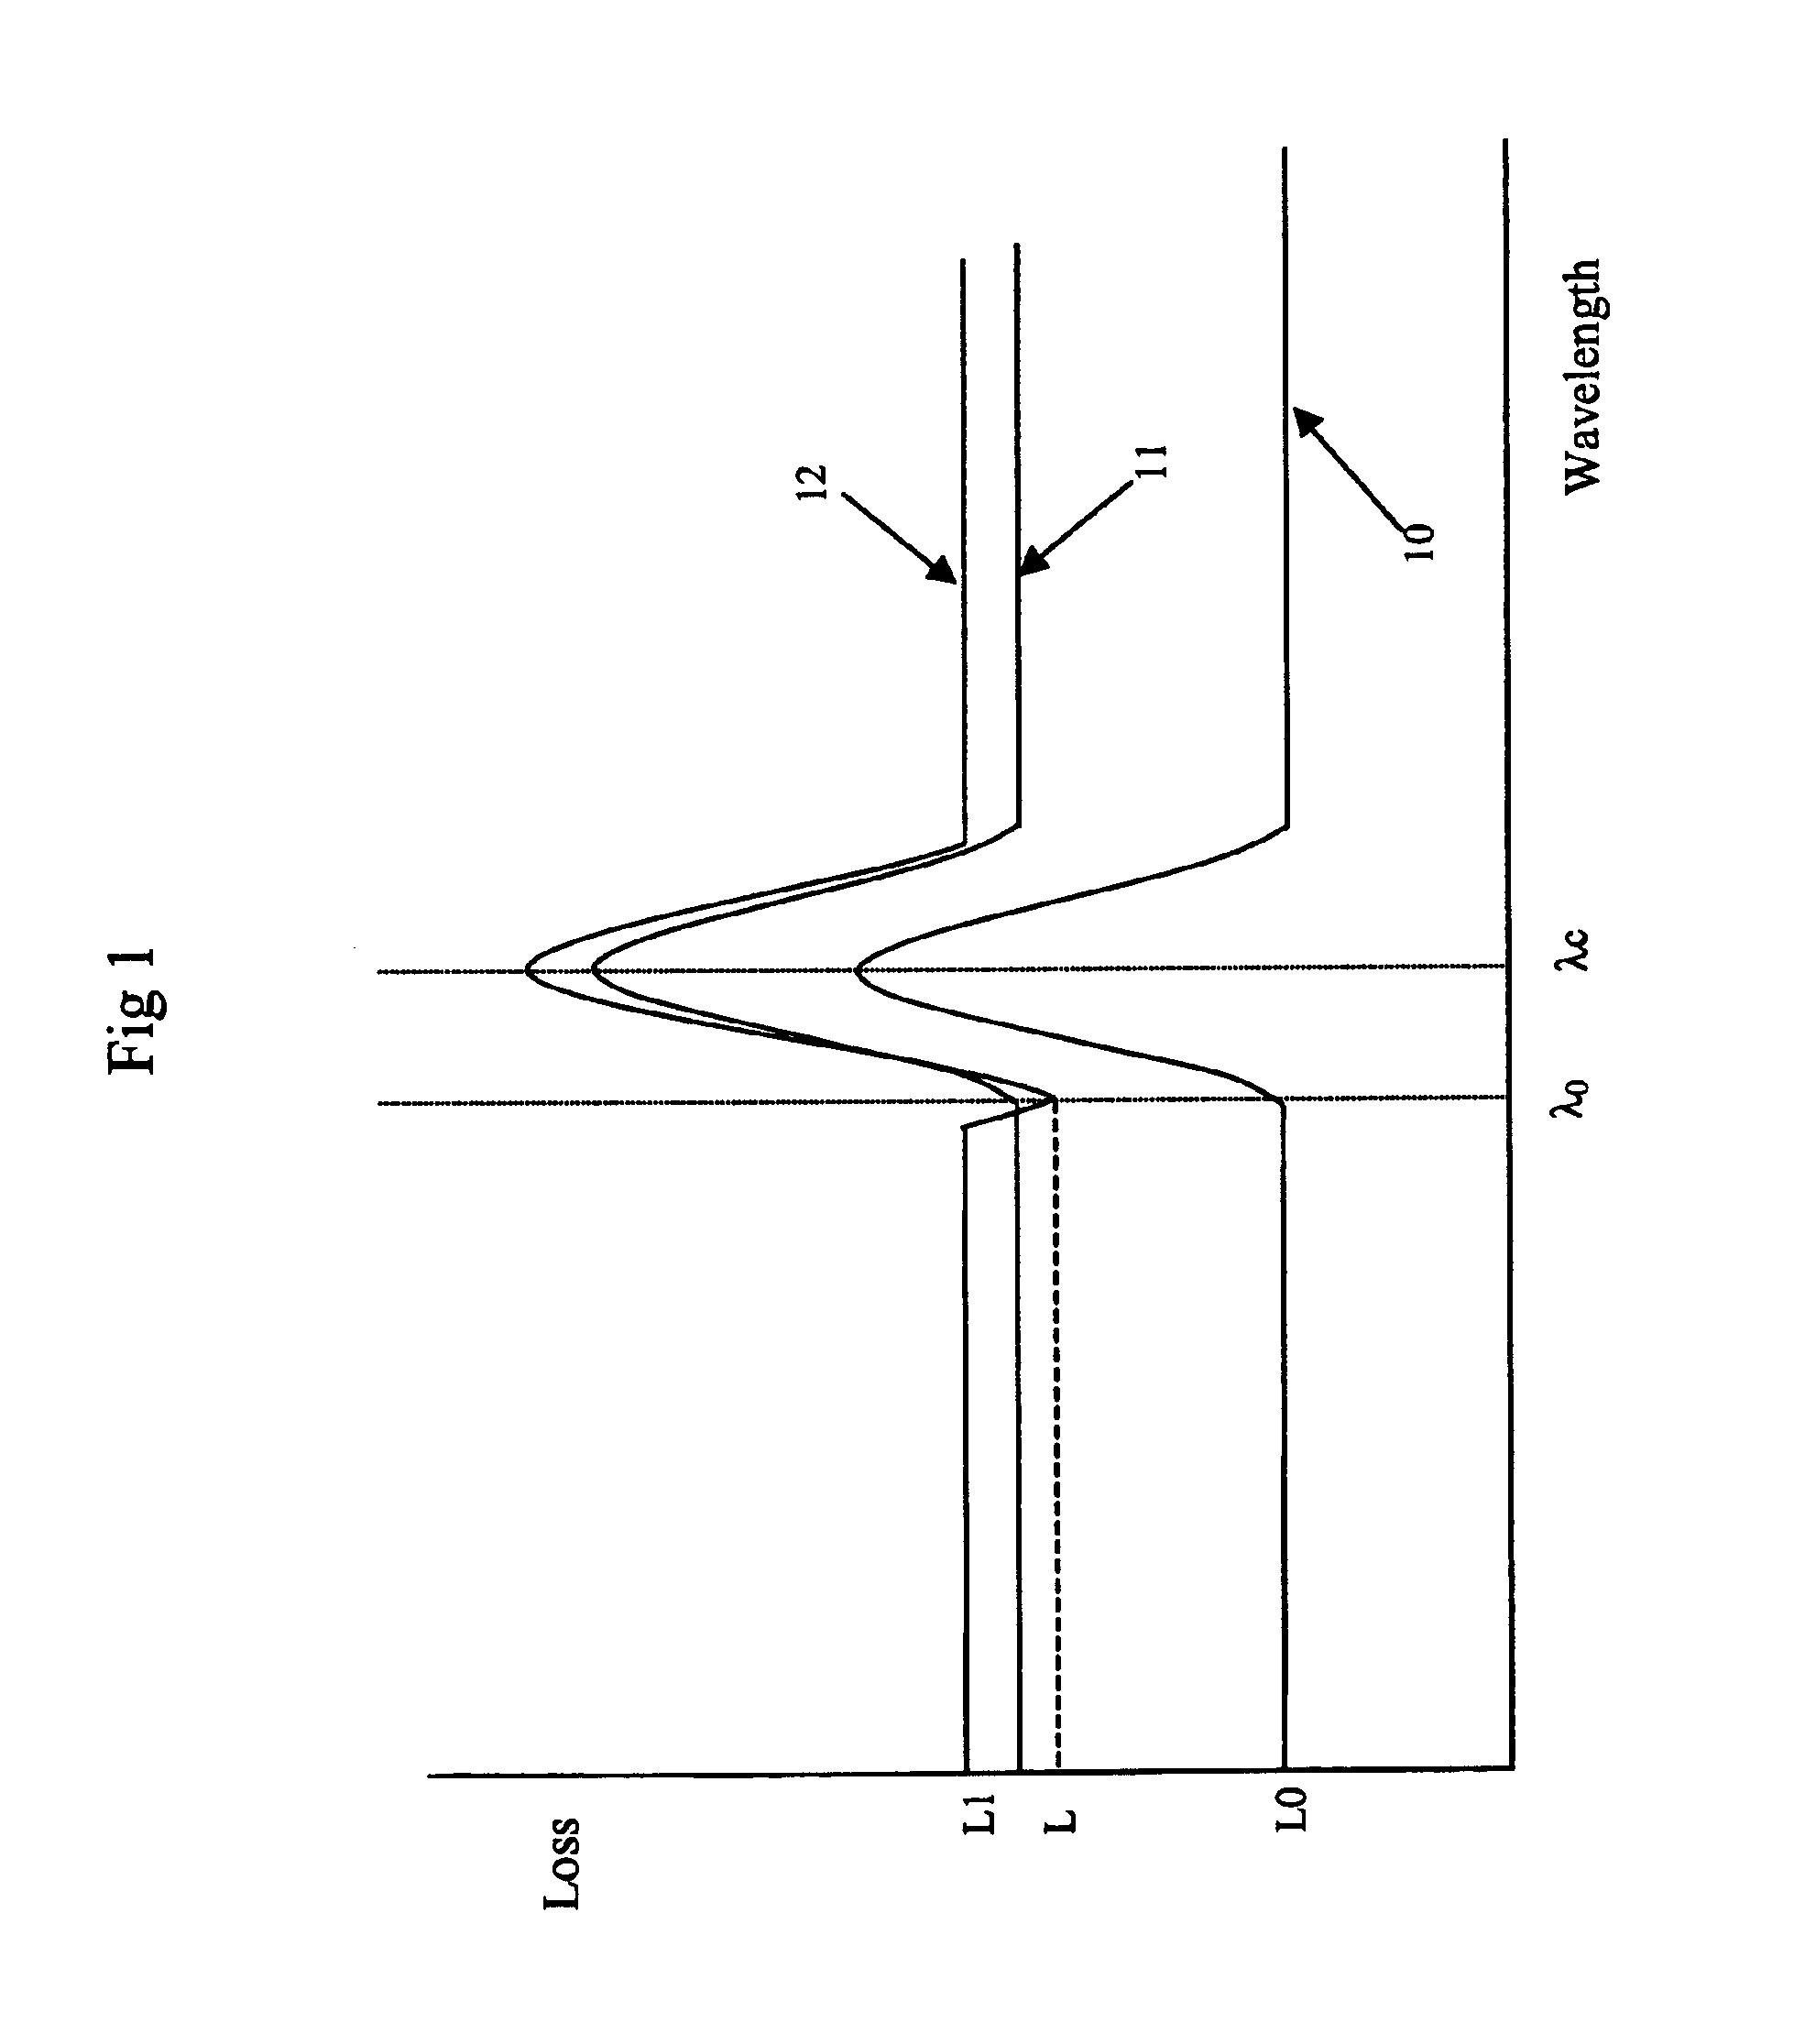 Laser with reflective etalon tuning element